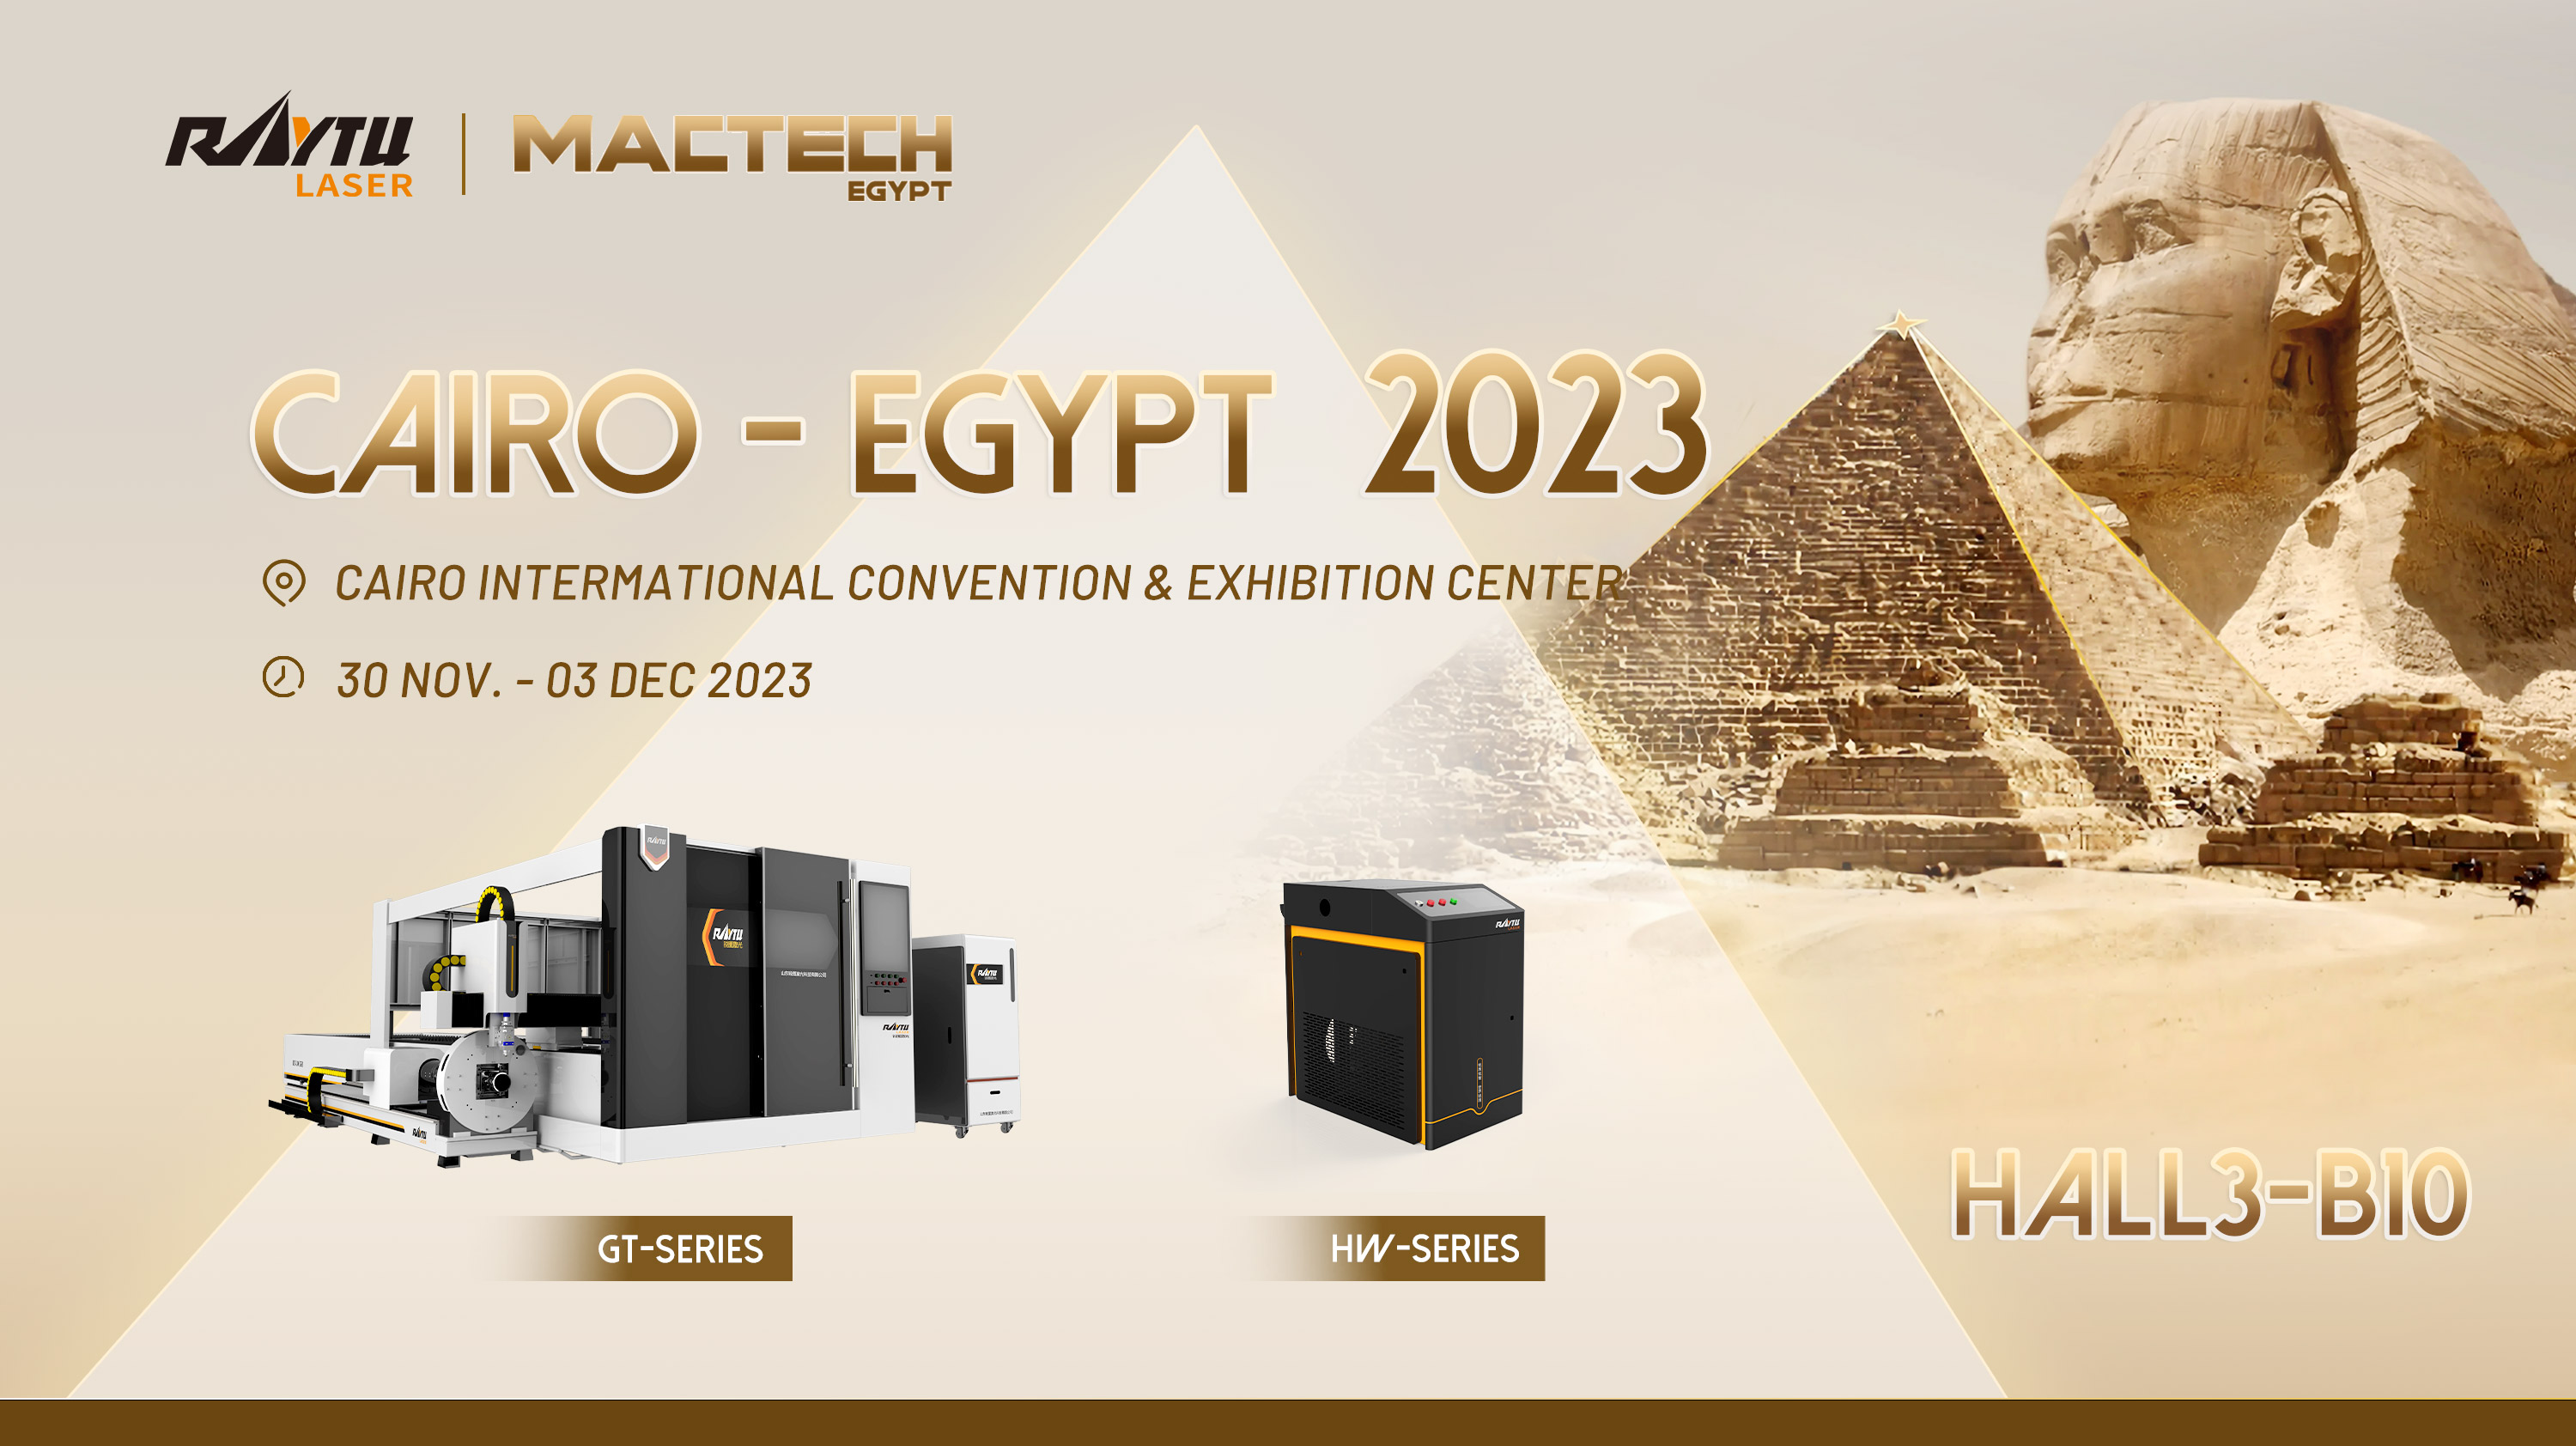 Компания Raytu laser приглашает Вас посетить выставку Mactech Cairo-Egypt 2023 с 30 ноября по 3 дека